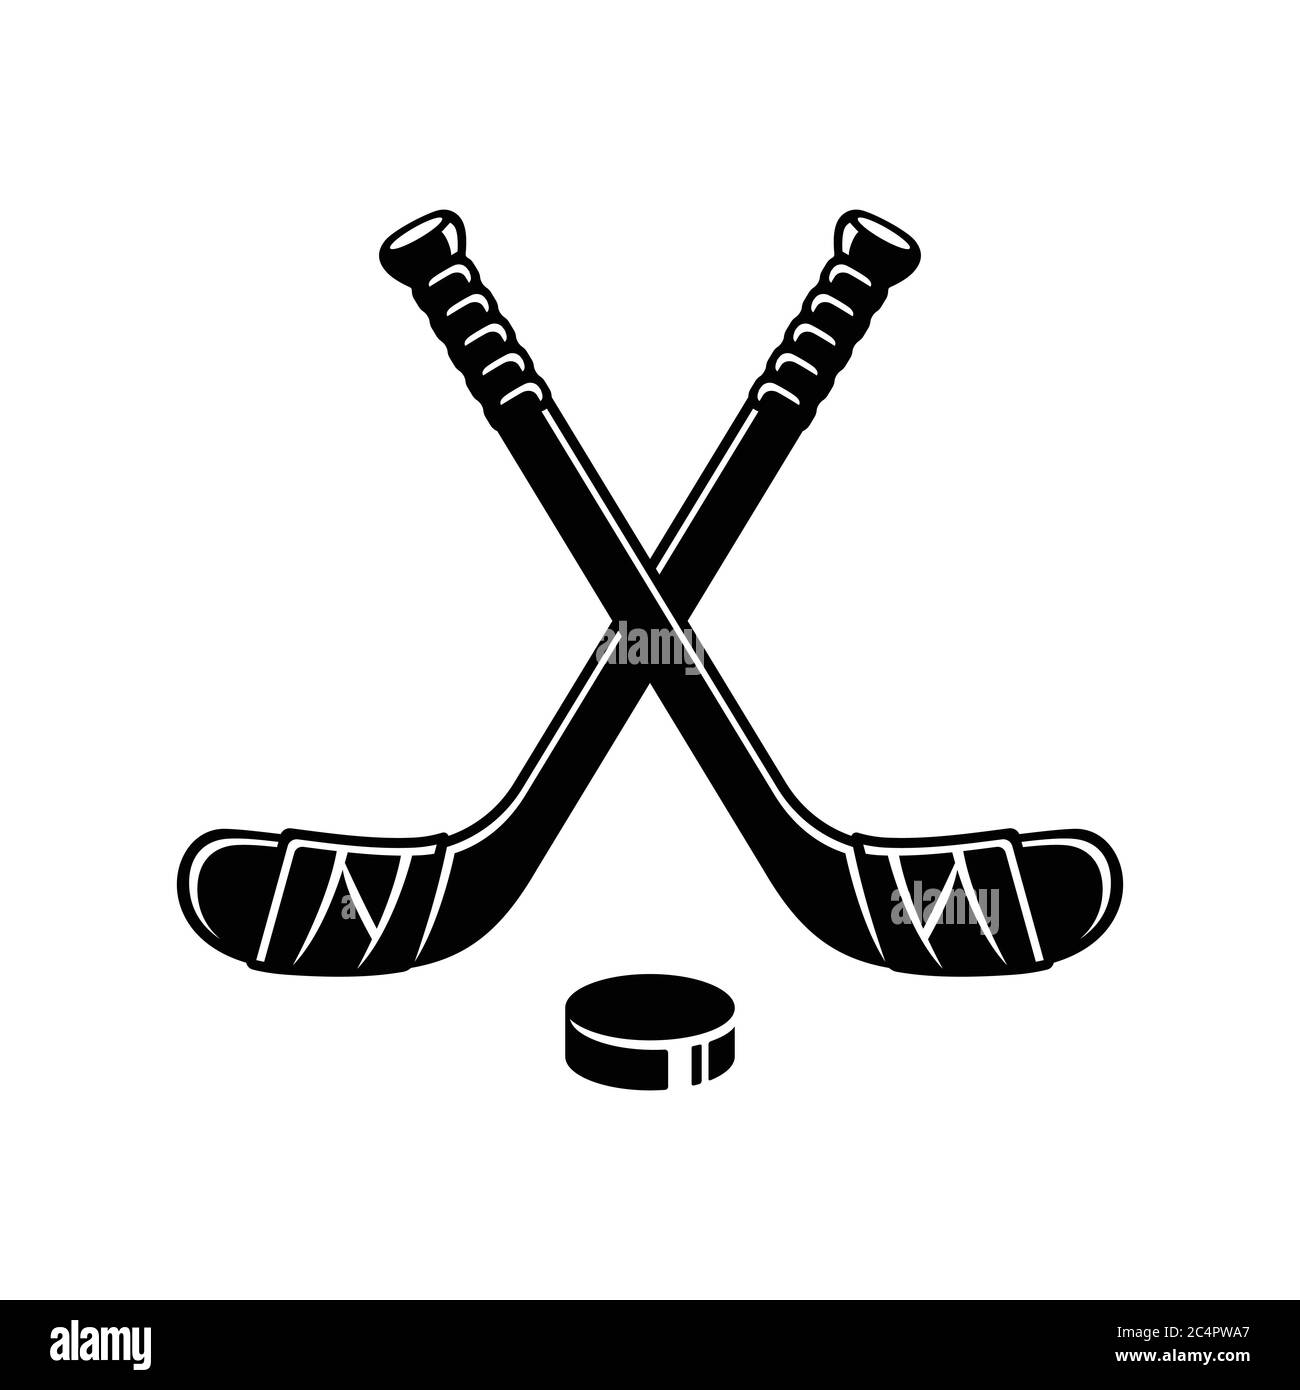 Hockey logo Black and White Stock Photos & Images - Alamy